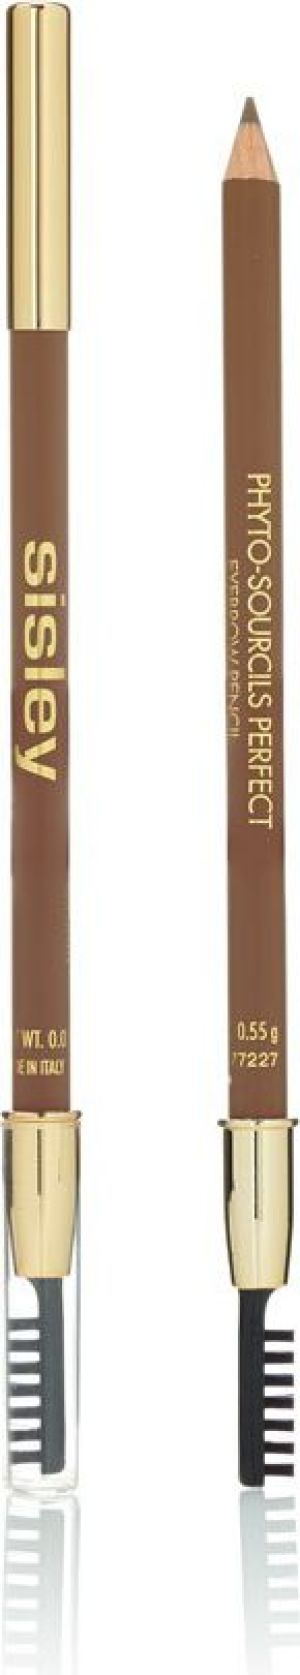 Sisley Phyto Sourcils Perfect Eyebrow Pencil Kredka do brwi 2 Chatain 0,55g 1